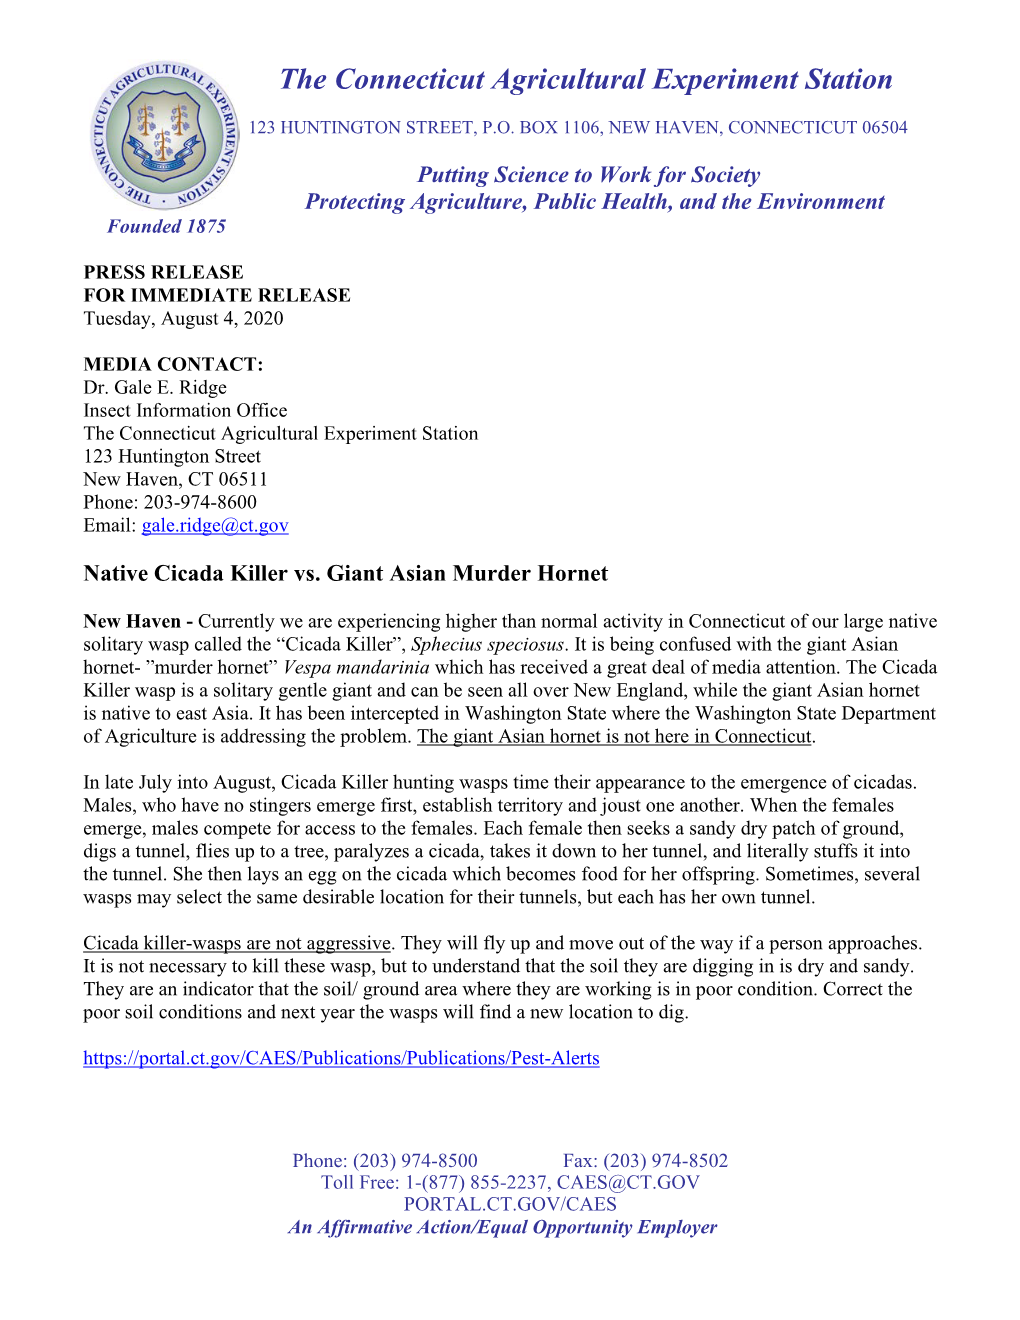 CAES Press Release Native Cicada Killer Vs. Giant Asian Murder Hornet 8-4-2020